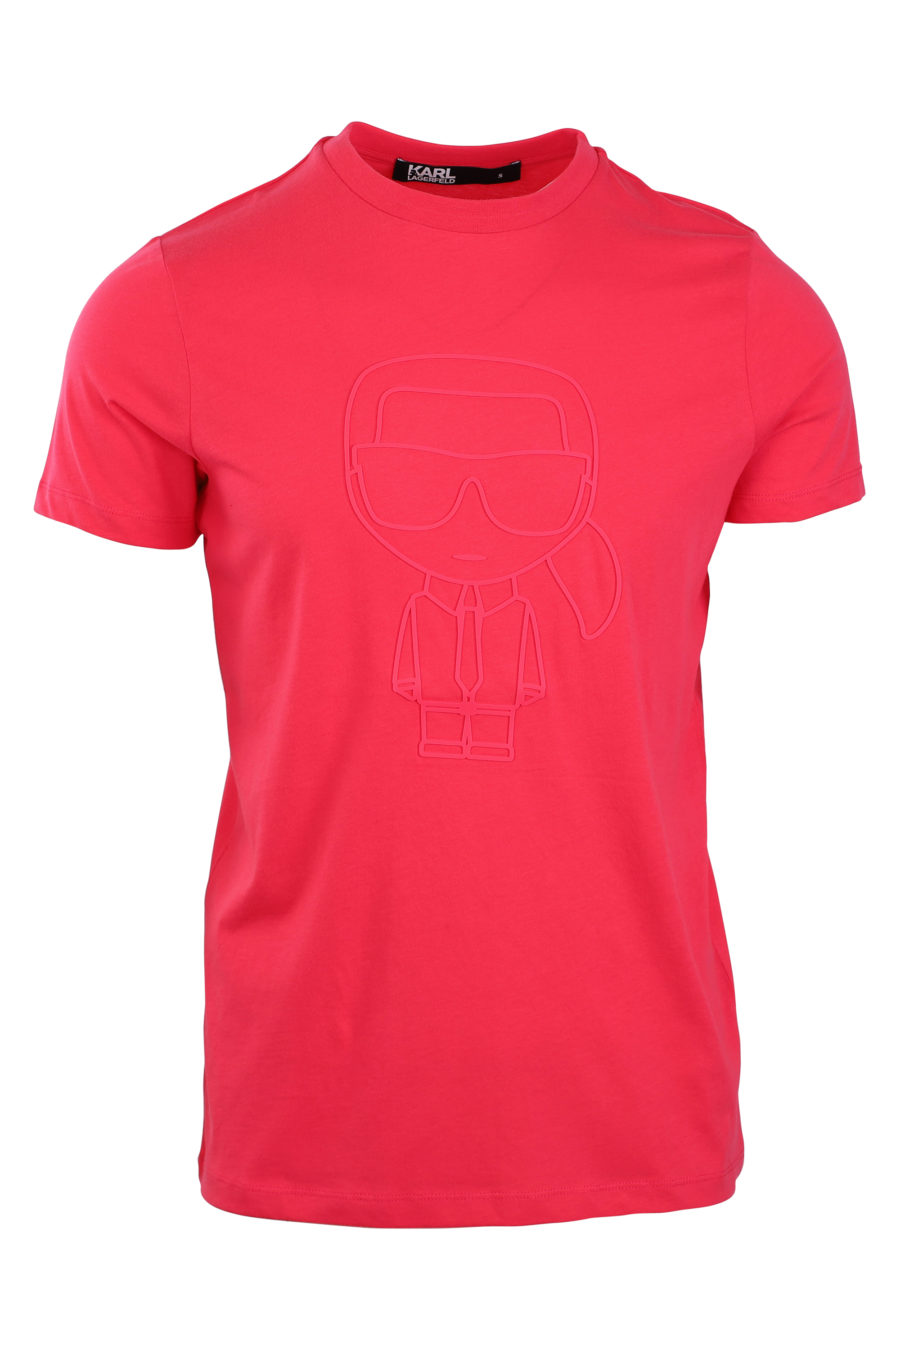 Camiseta fucsia con logo en silueta monocromático - IMG 0844